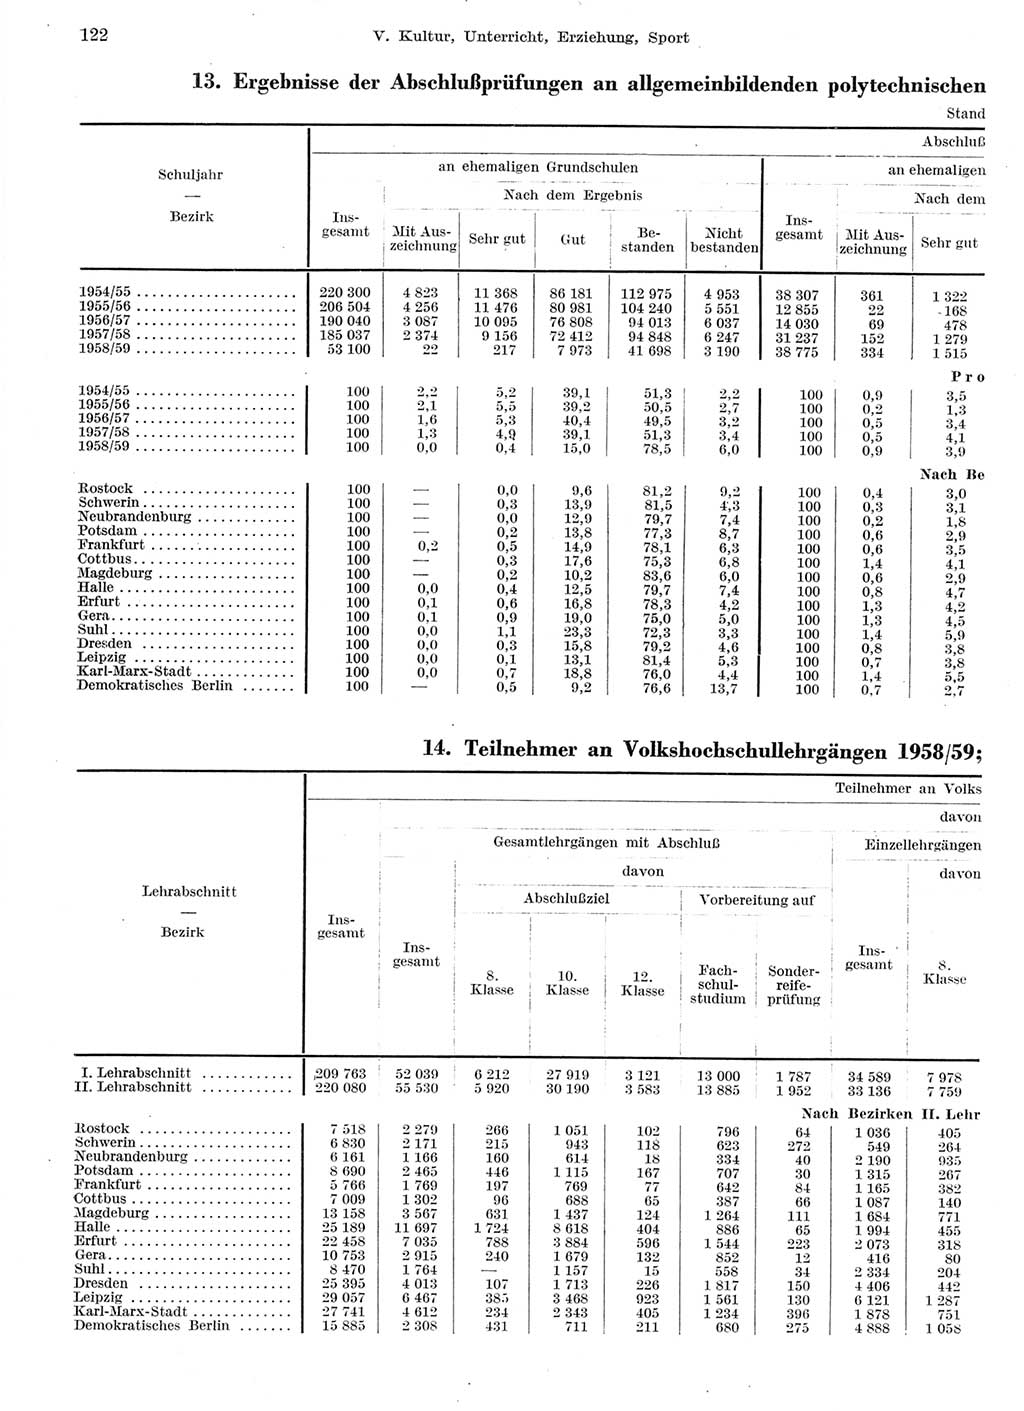 Statistisches Jahrbuch der Deutschen Demokratischen Republik (DDR) 1959, Seite 122 (Stat. Jb. DDR 1959, S. 122)